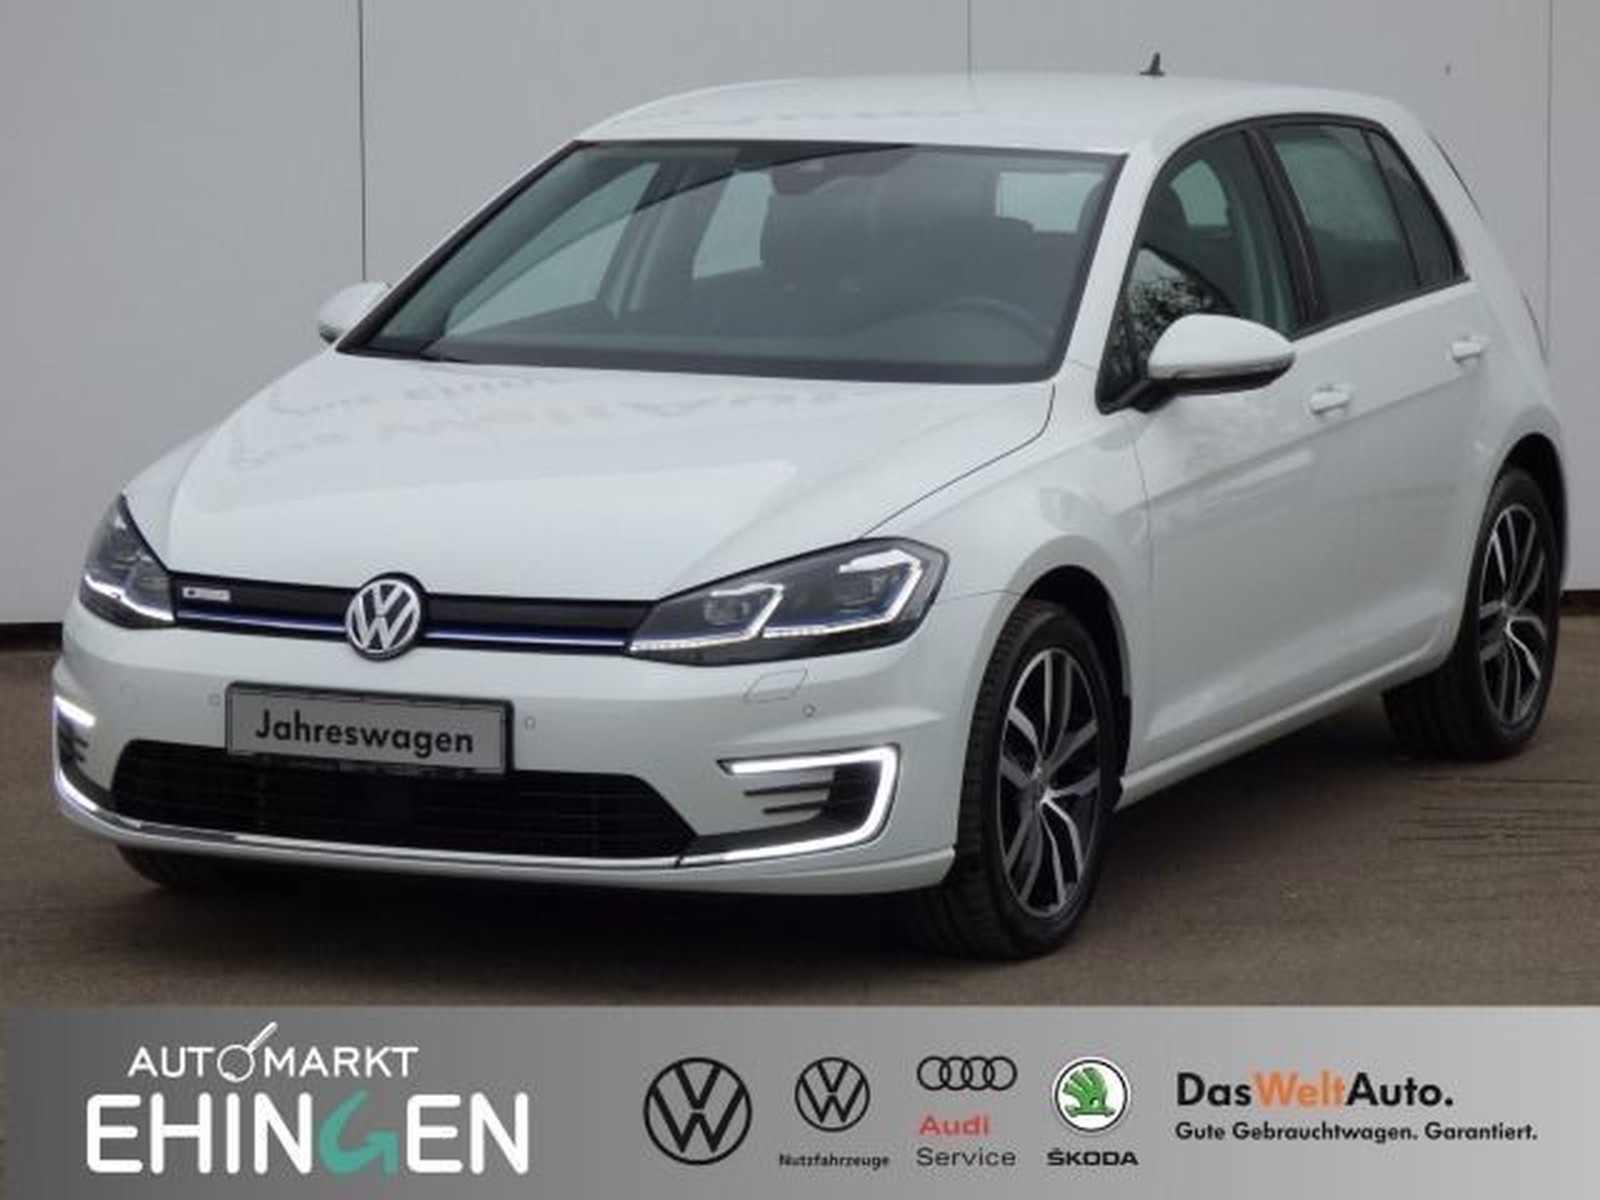 Volkswagen - Gebrauchtwagen & Neuwagen kaufen & verkaufen